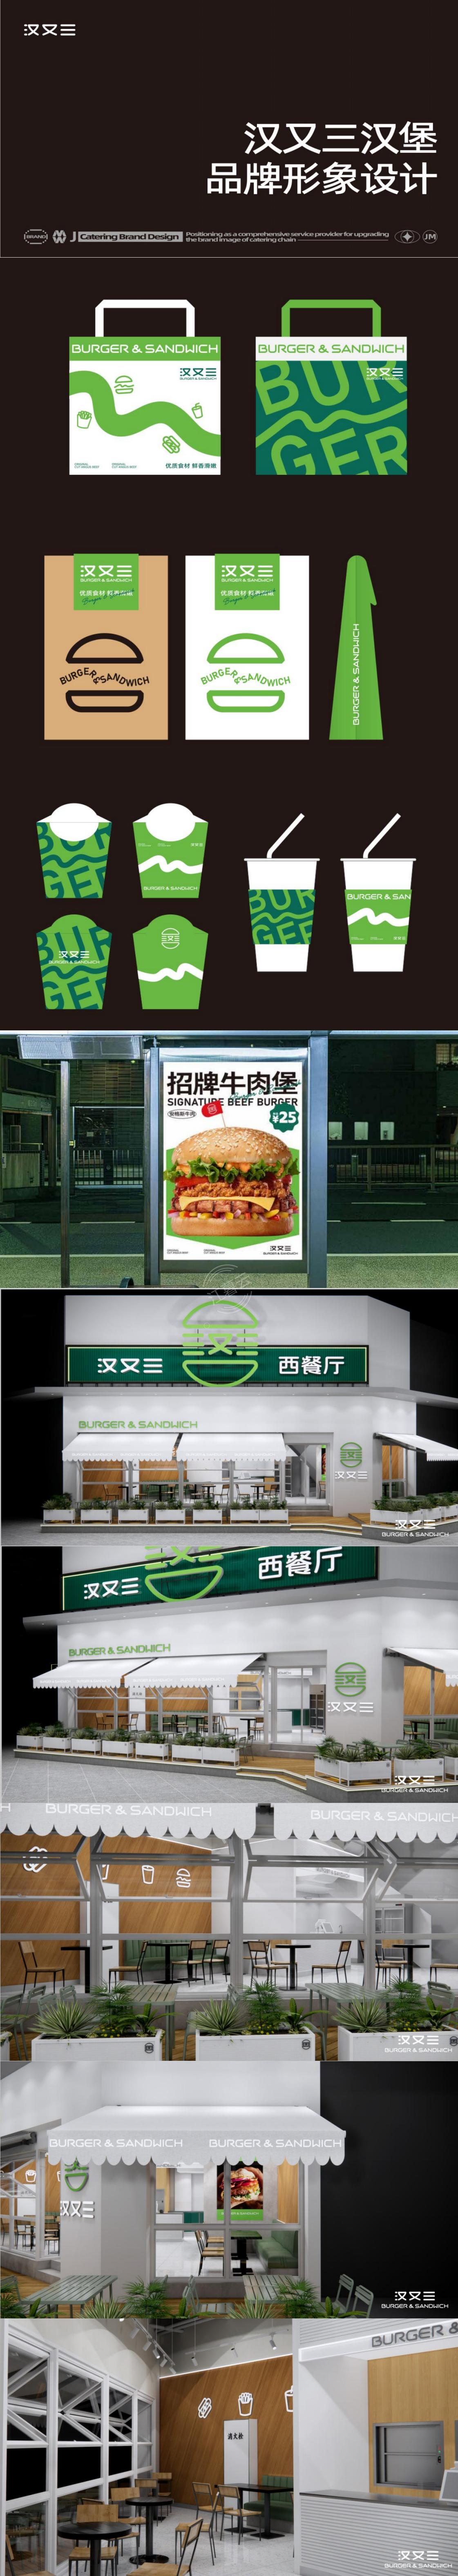 企业餐饮品牌全案设计/ 汉又三 餐饮店品牌vi+空间设计